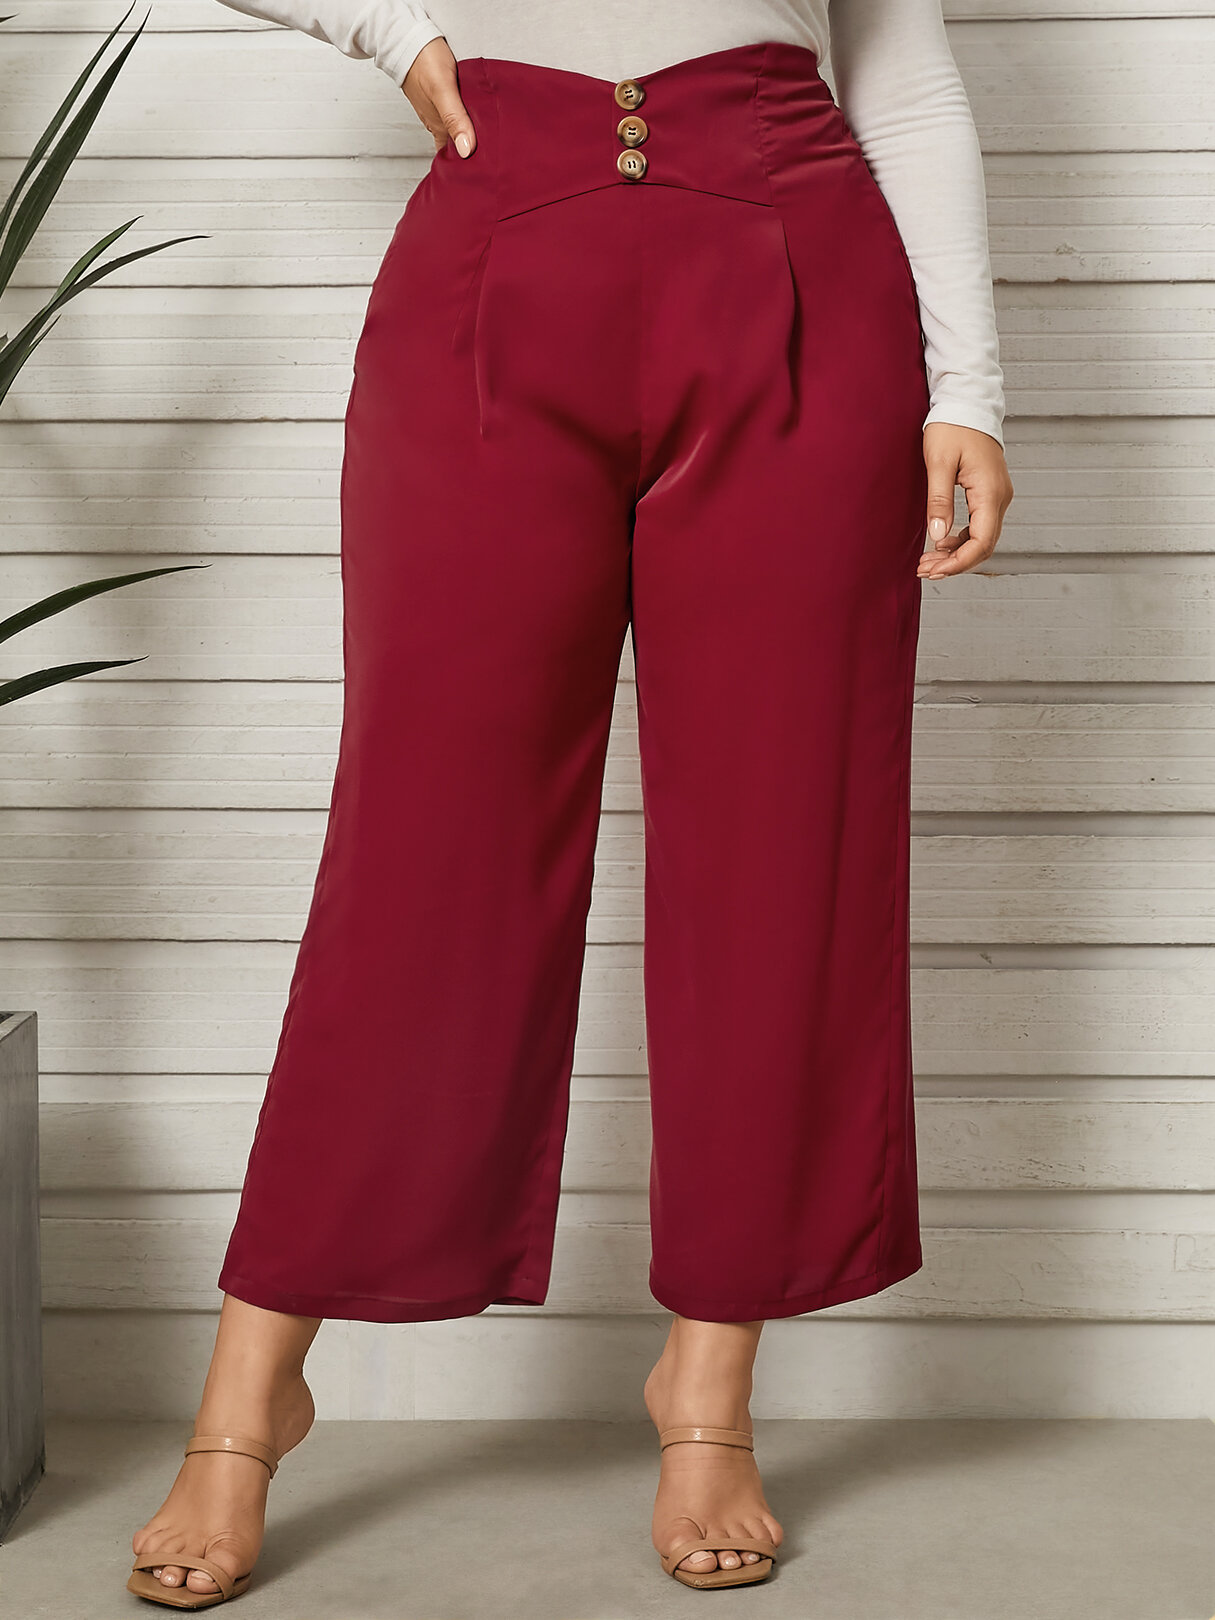 YOINS Plus Size Button Design Elastic Waist Pants